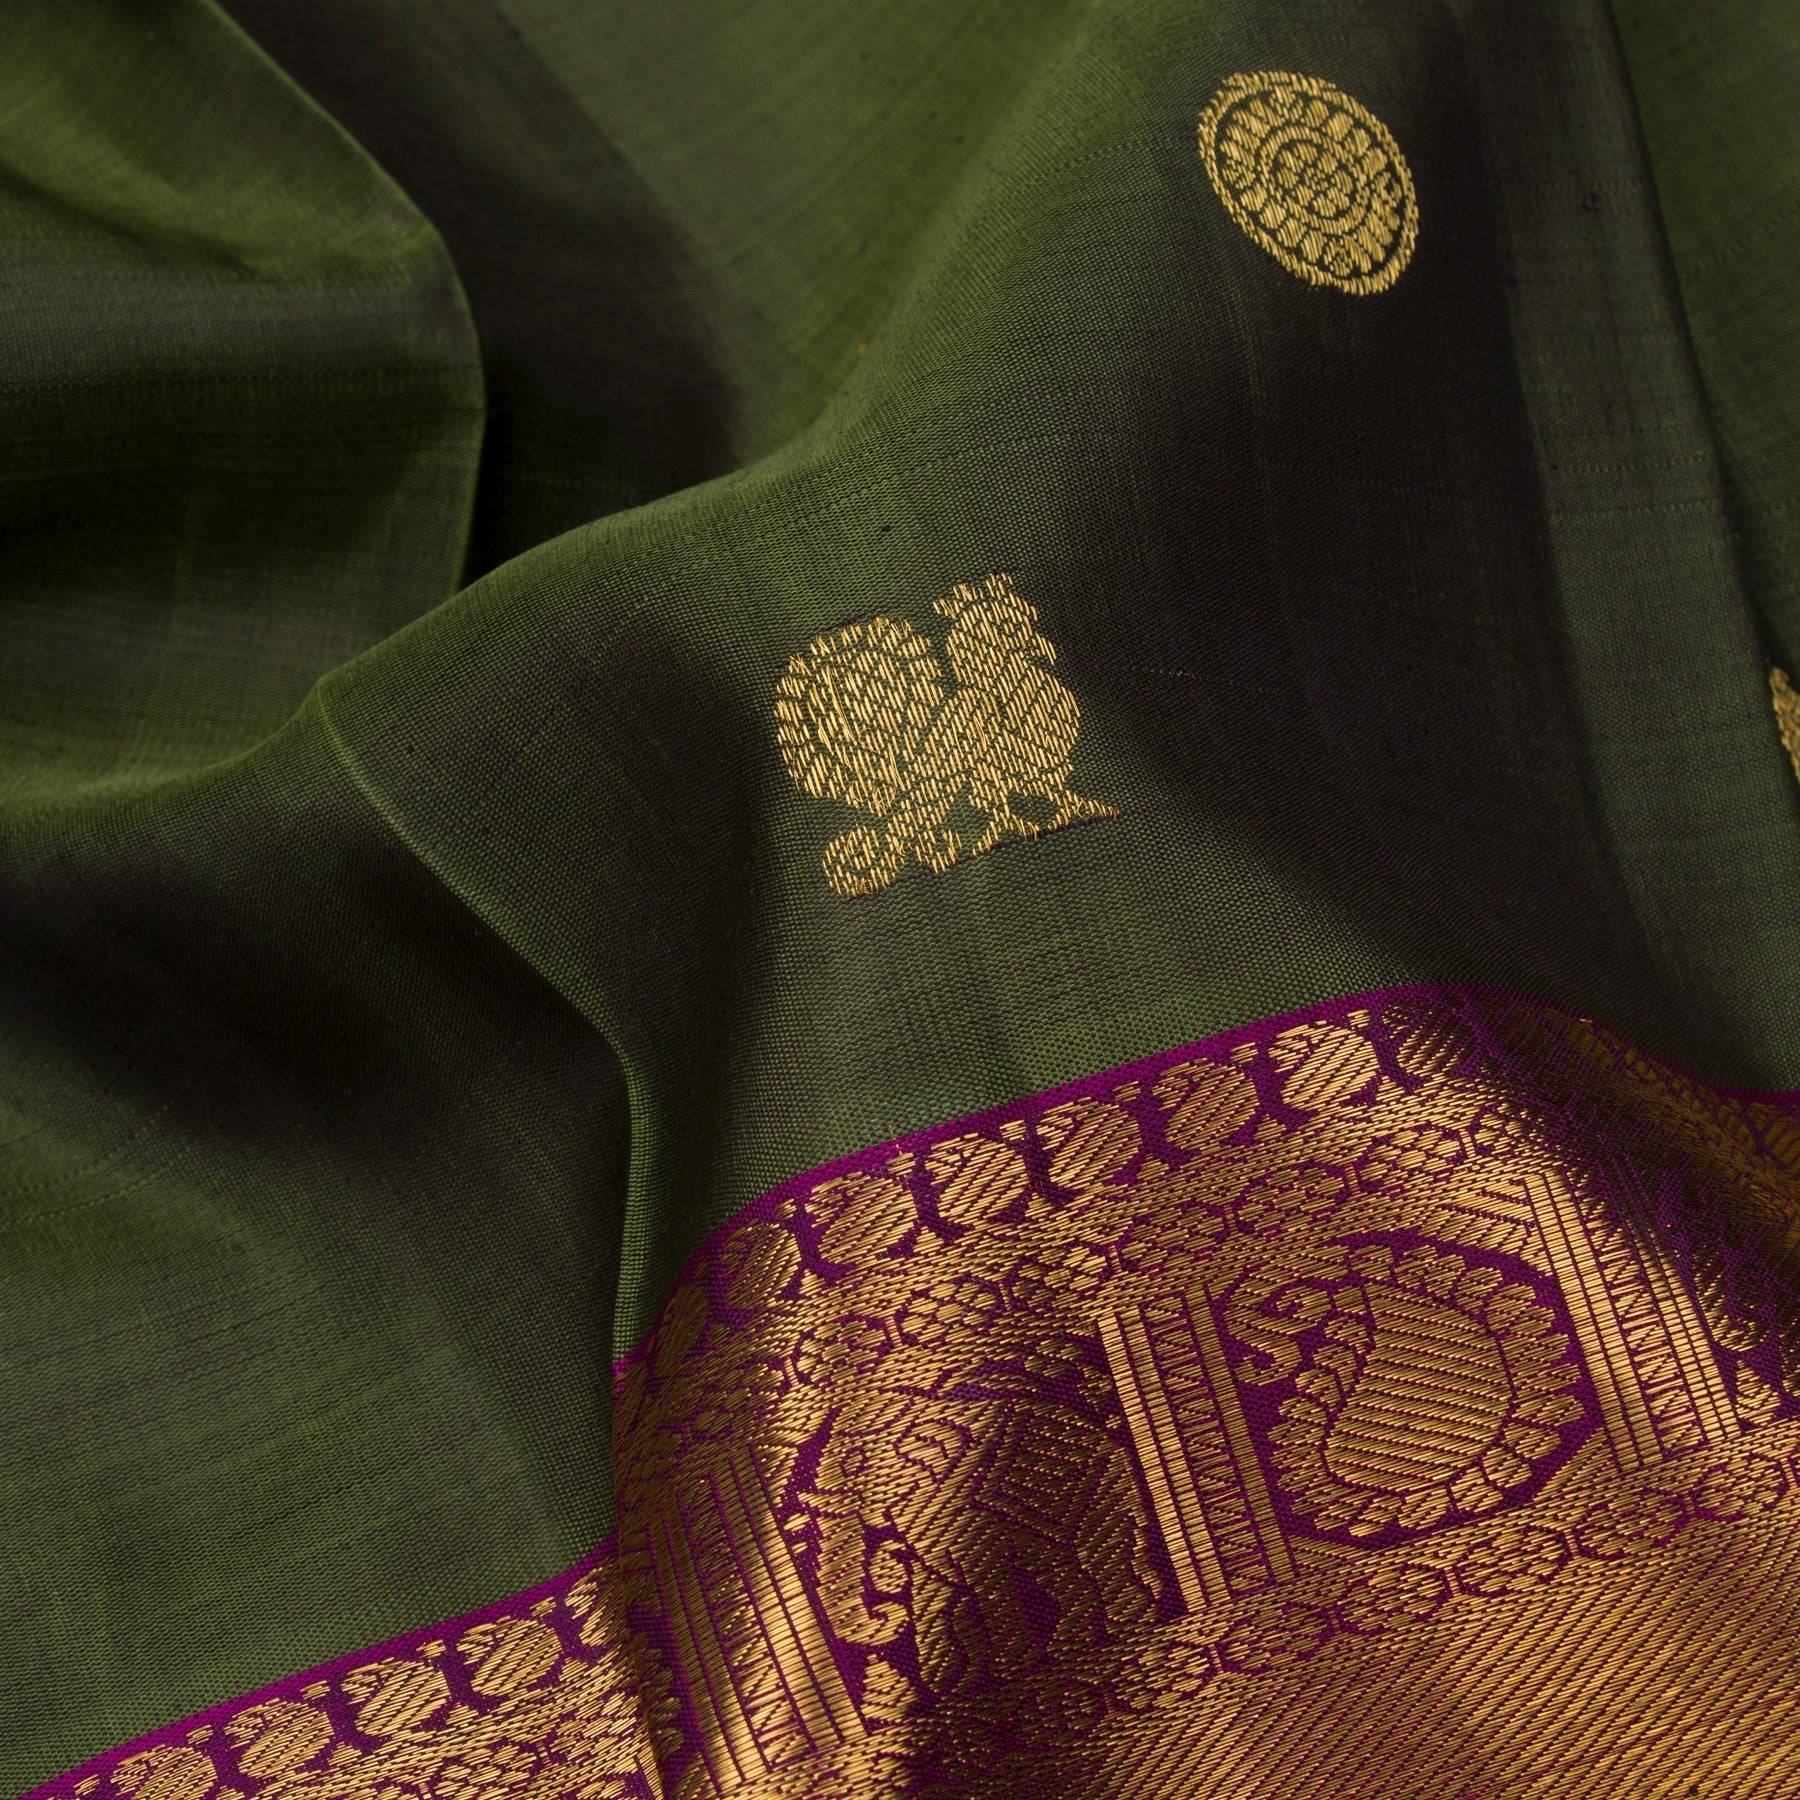 Kanakavalli Kanjivaram Silk Sari 22-595-HS001-13375 - Fabric View